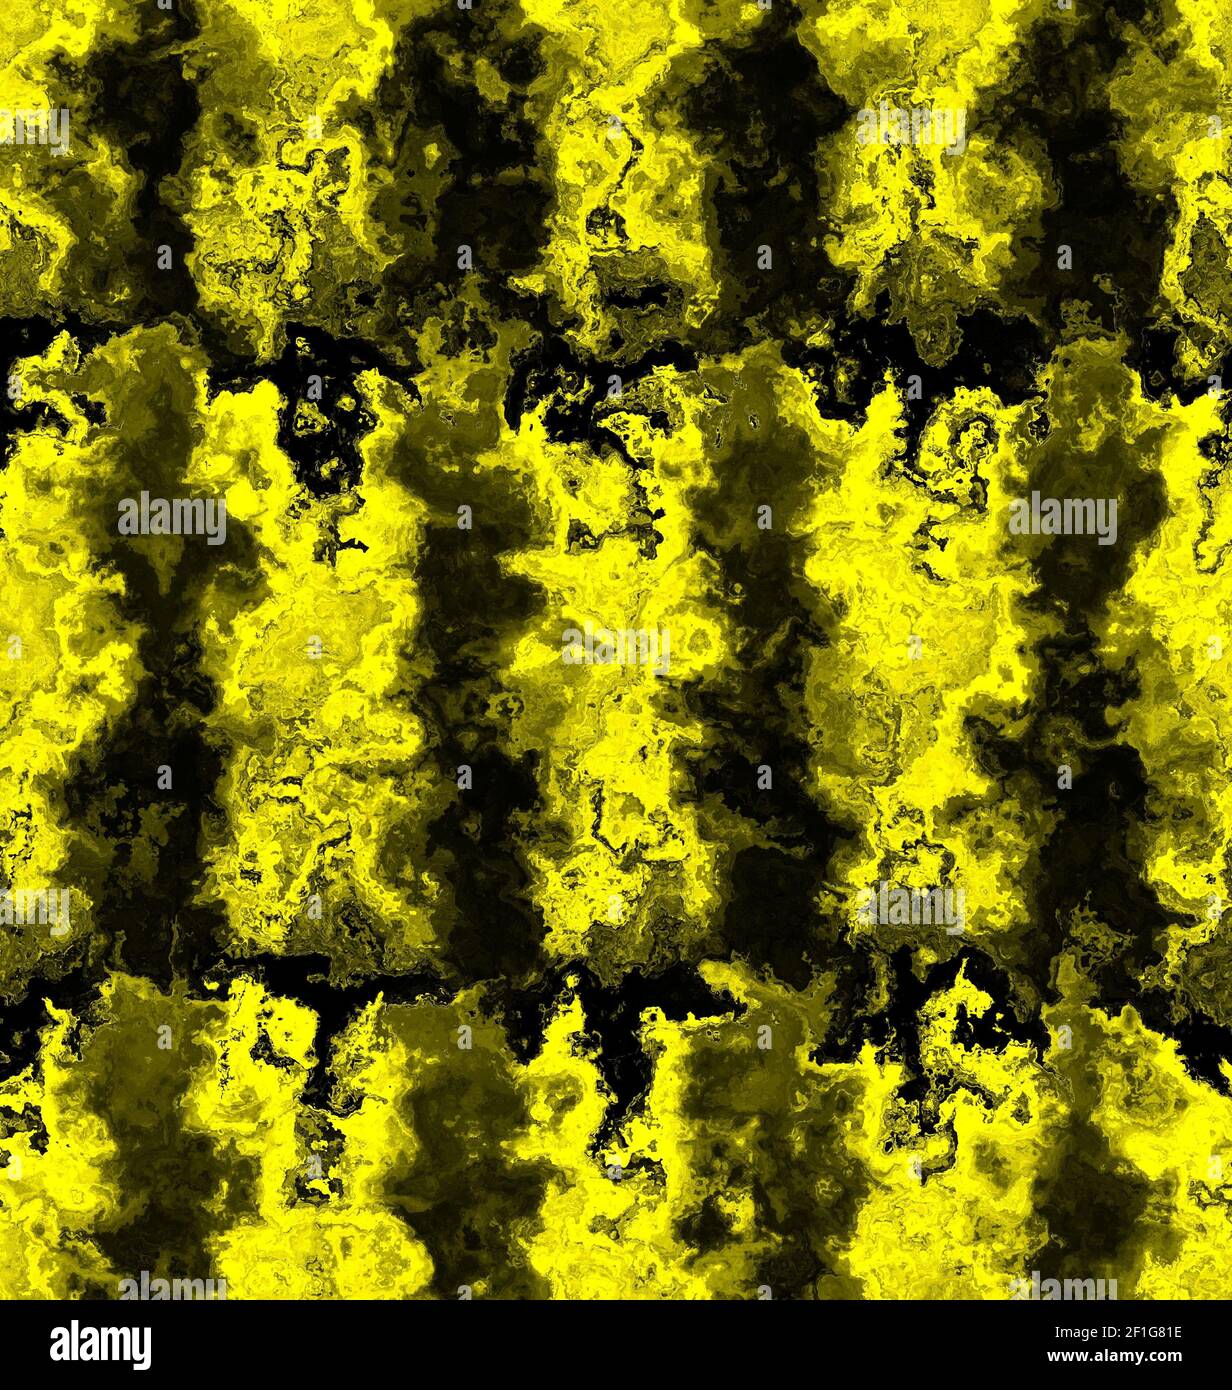 Ein abstraktes Muster in verschwommenem öligen Gelb und dunklen Farben Stockfoto